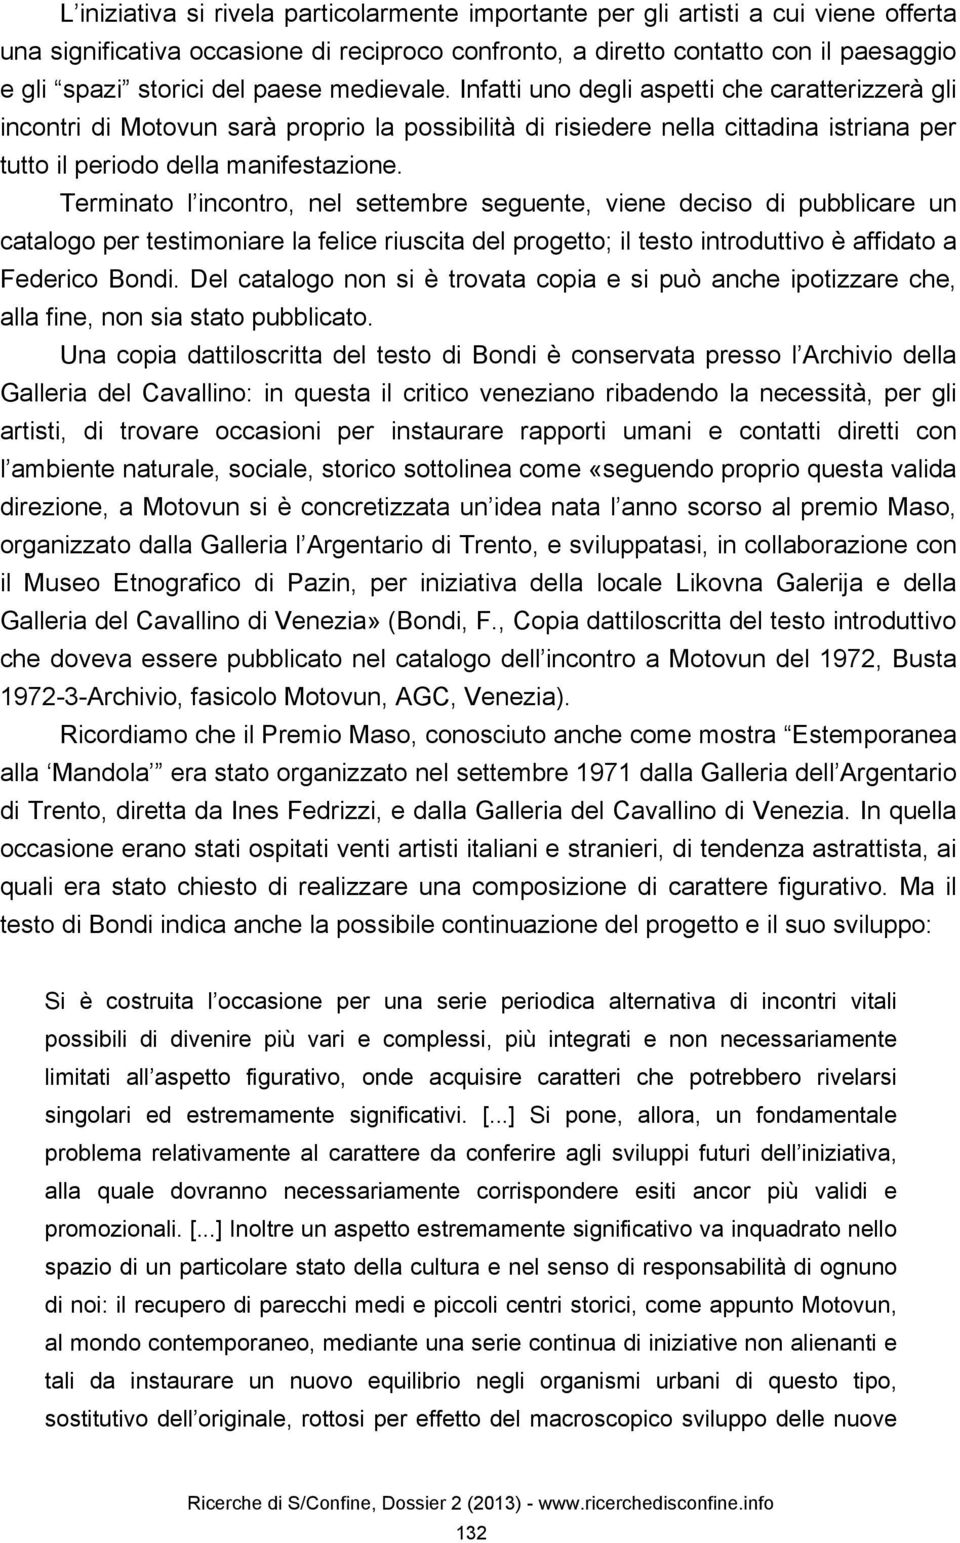 Terminato l incontro, nel settembre seguente, viene deciso di pubblicare un catalogo per testimoniare la felice riuscita del progetto; il testo introduttivo è affidato a Federico Bondi.